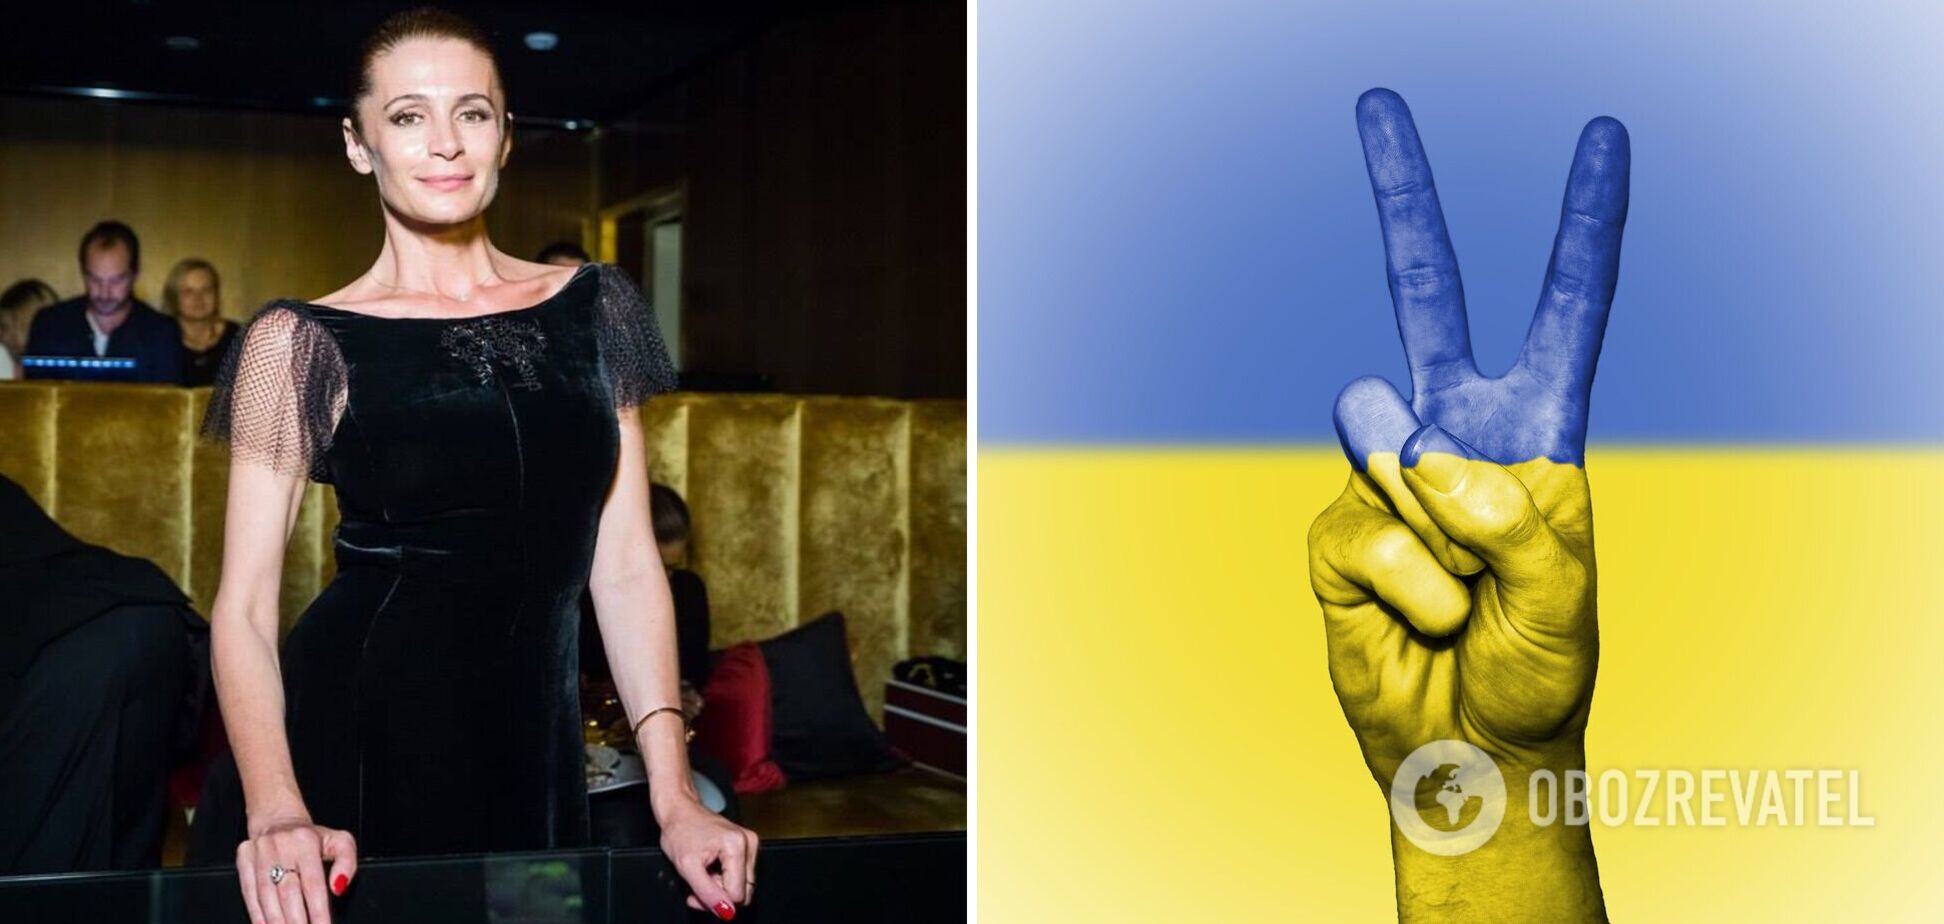 Неправильно поняли: российская актриса Фандера оправдалась за флаг Украины, но снова показала фото с намеком